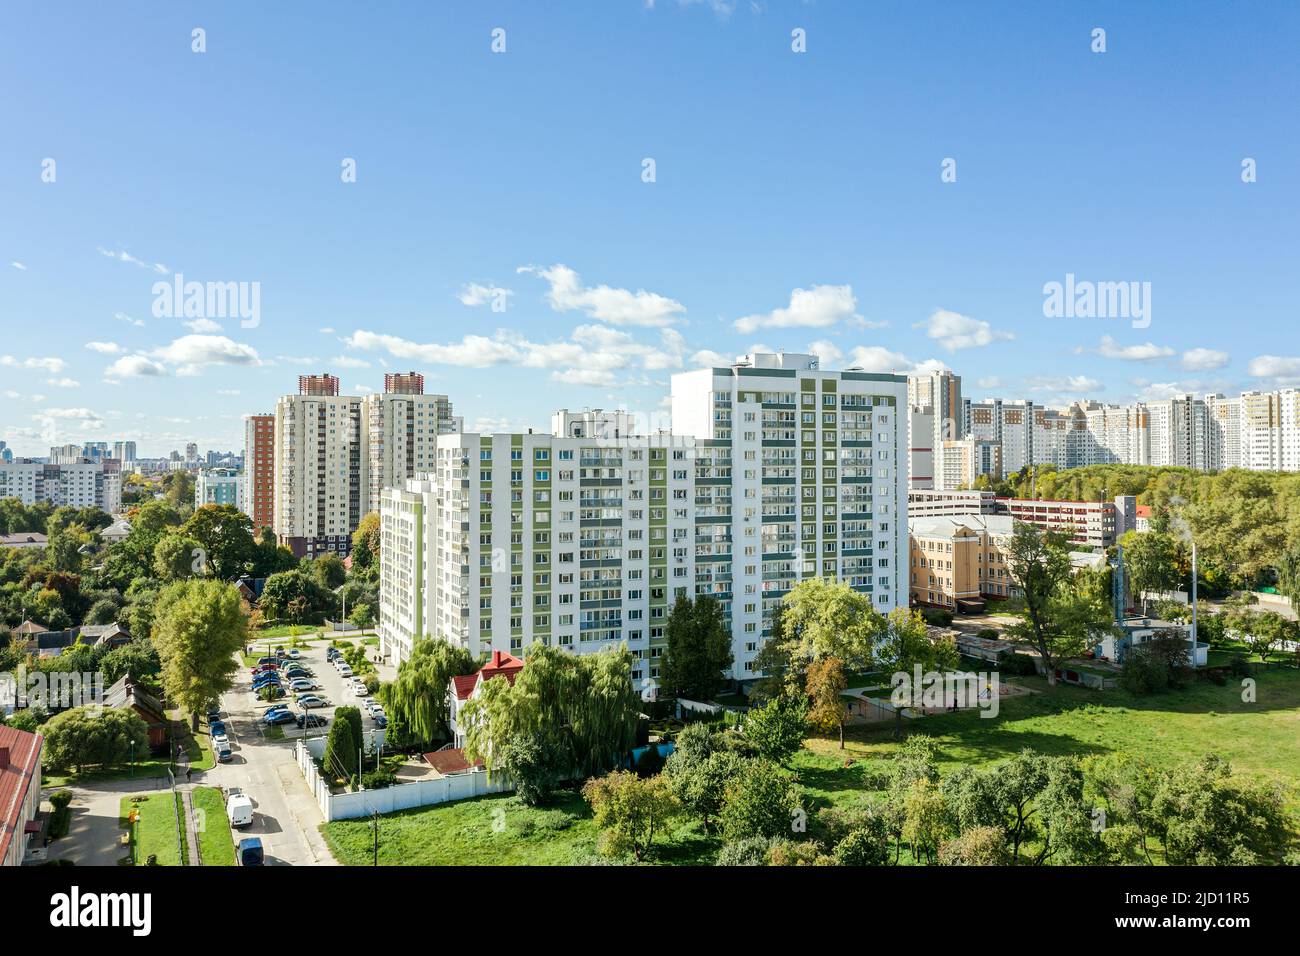 vista aérea del barrio residencial en un soleado día de verano. nuevas casas de varios pisos para vivir. Foto de stock